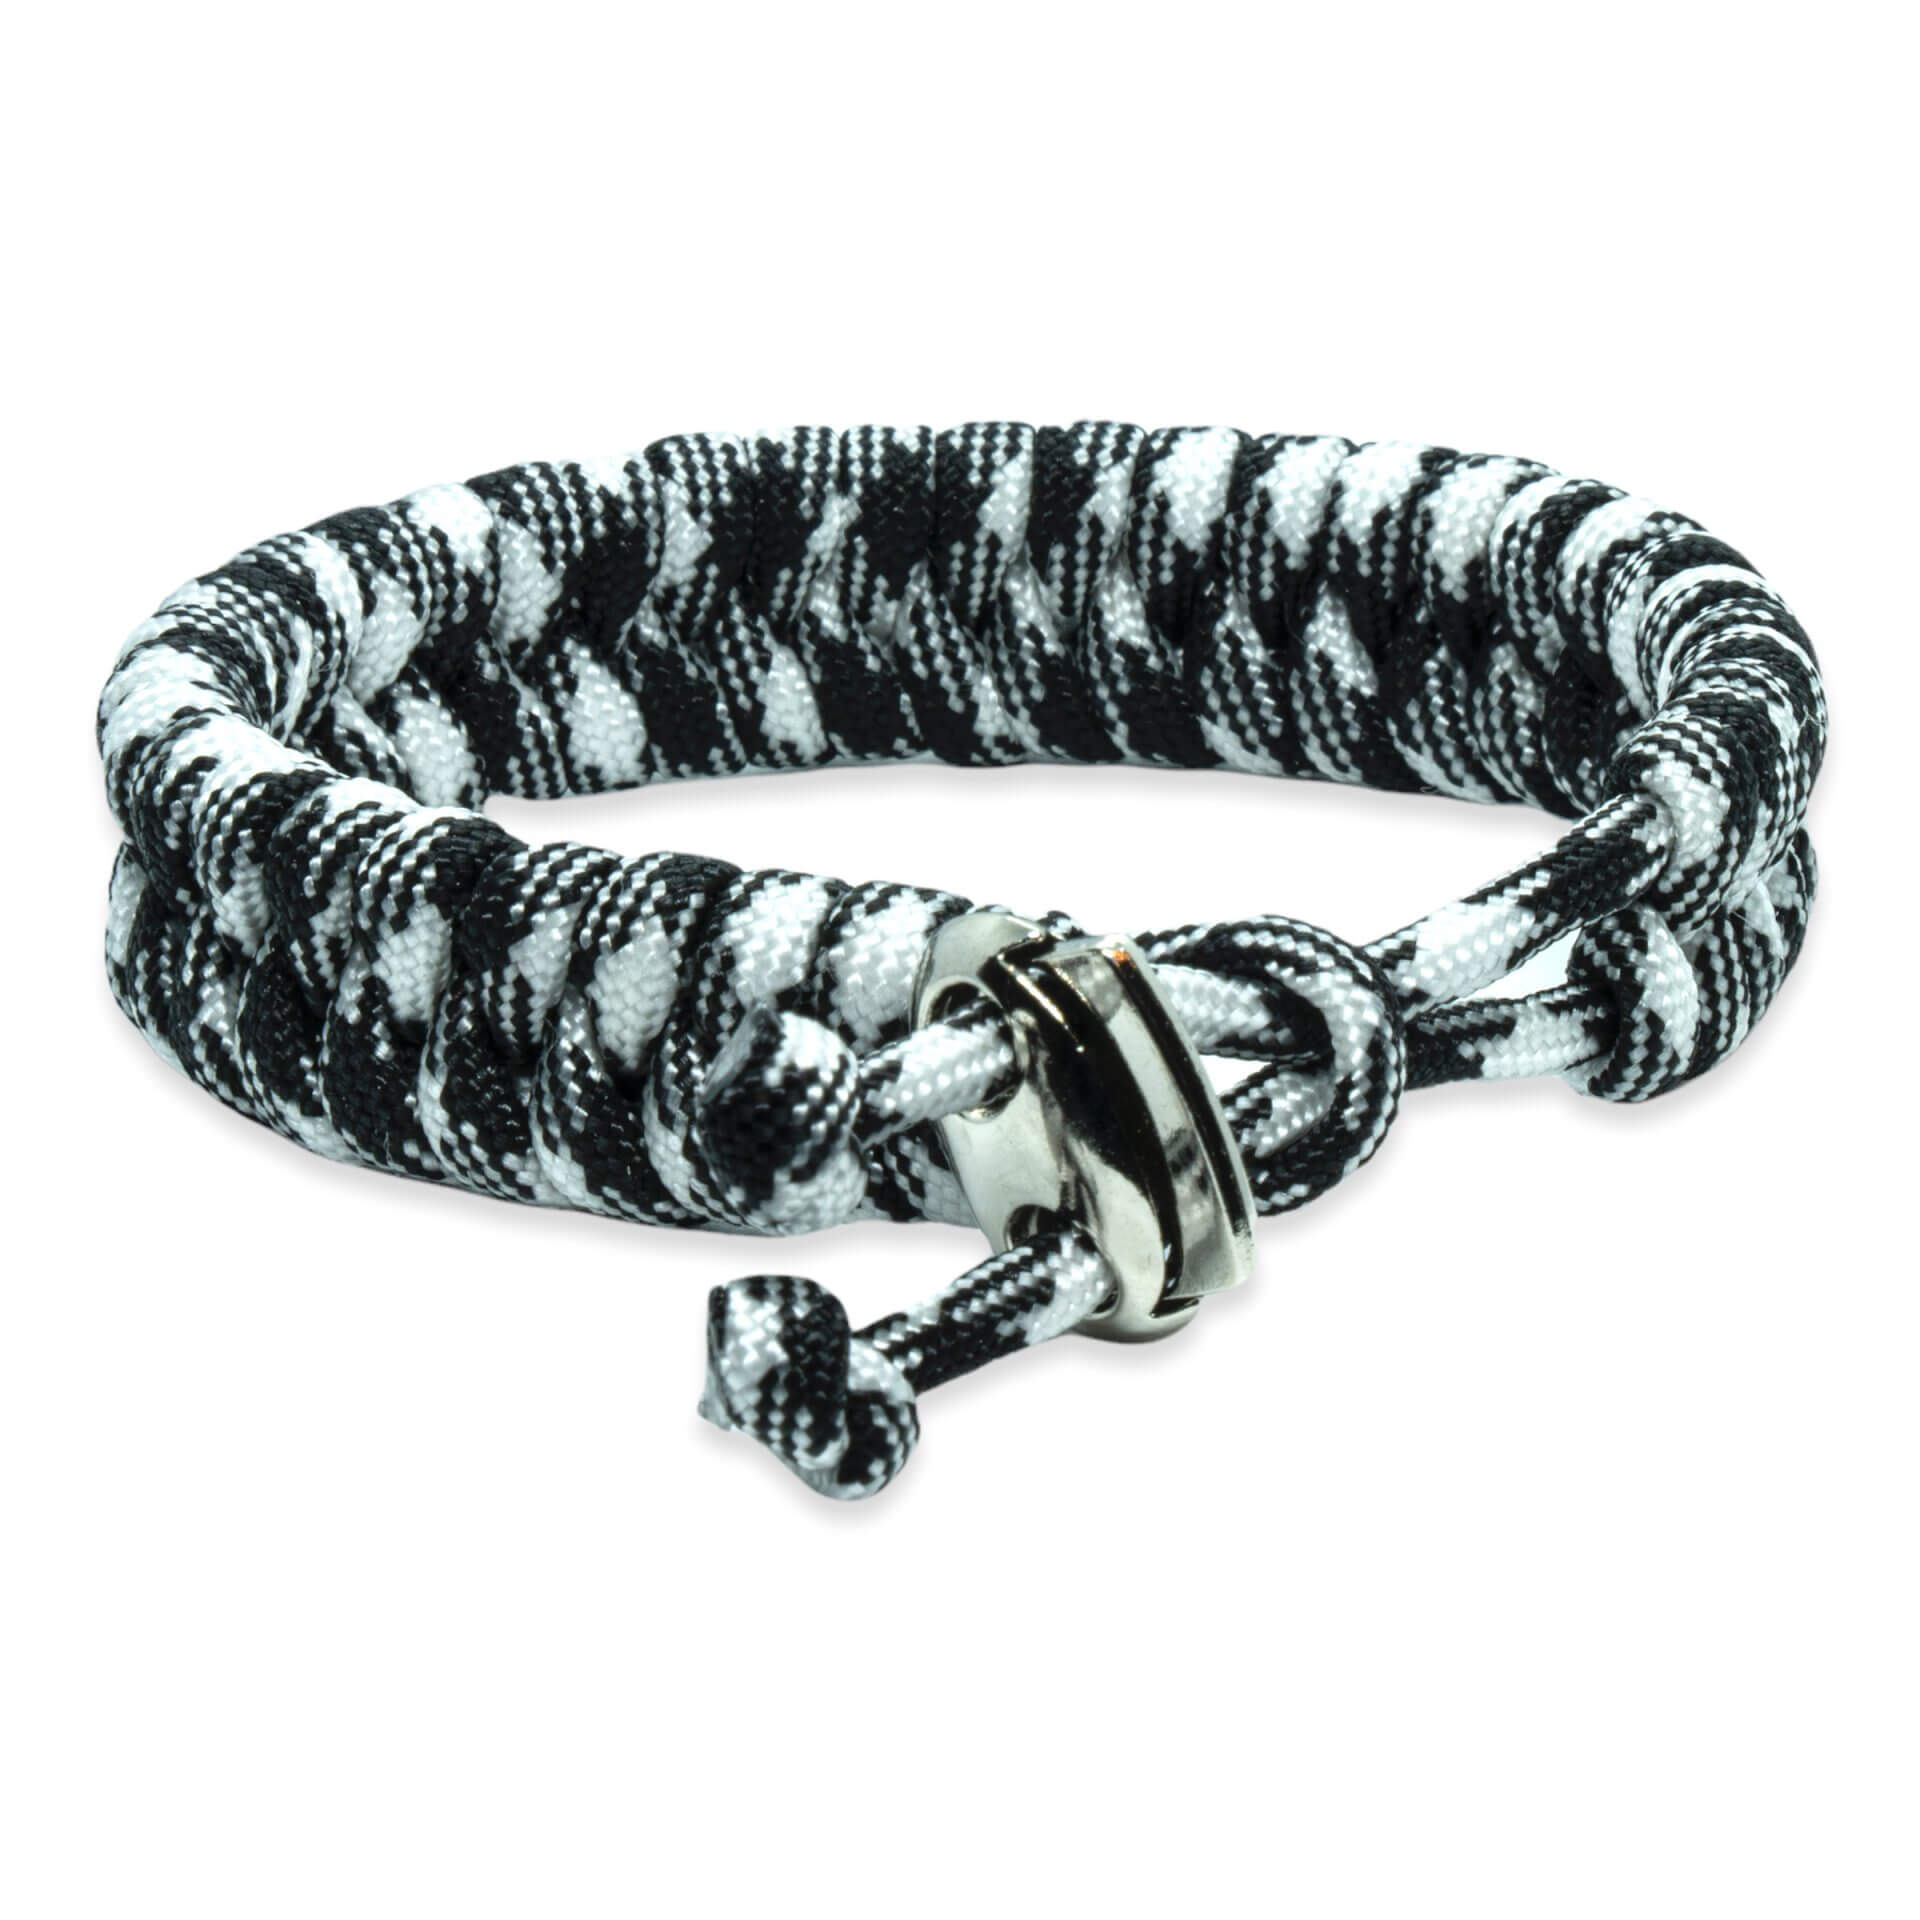 Swedish tail bracelet - Black white rope colors